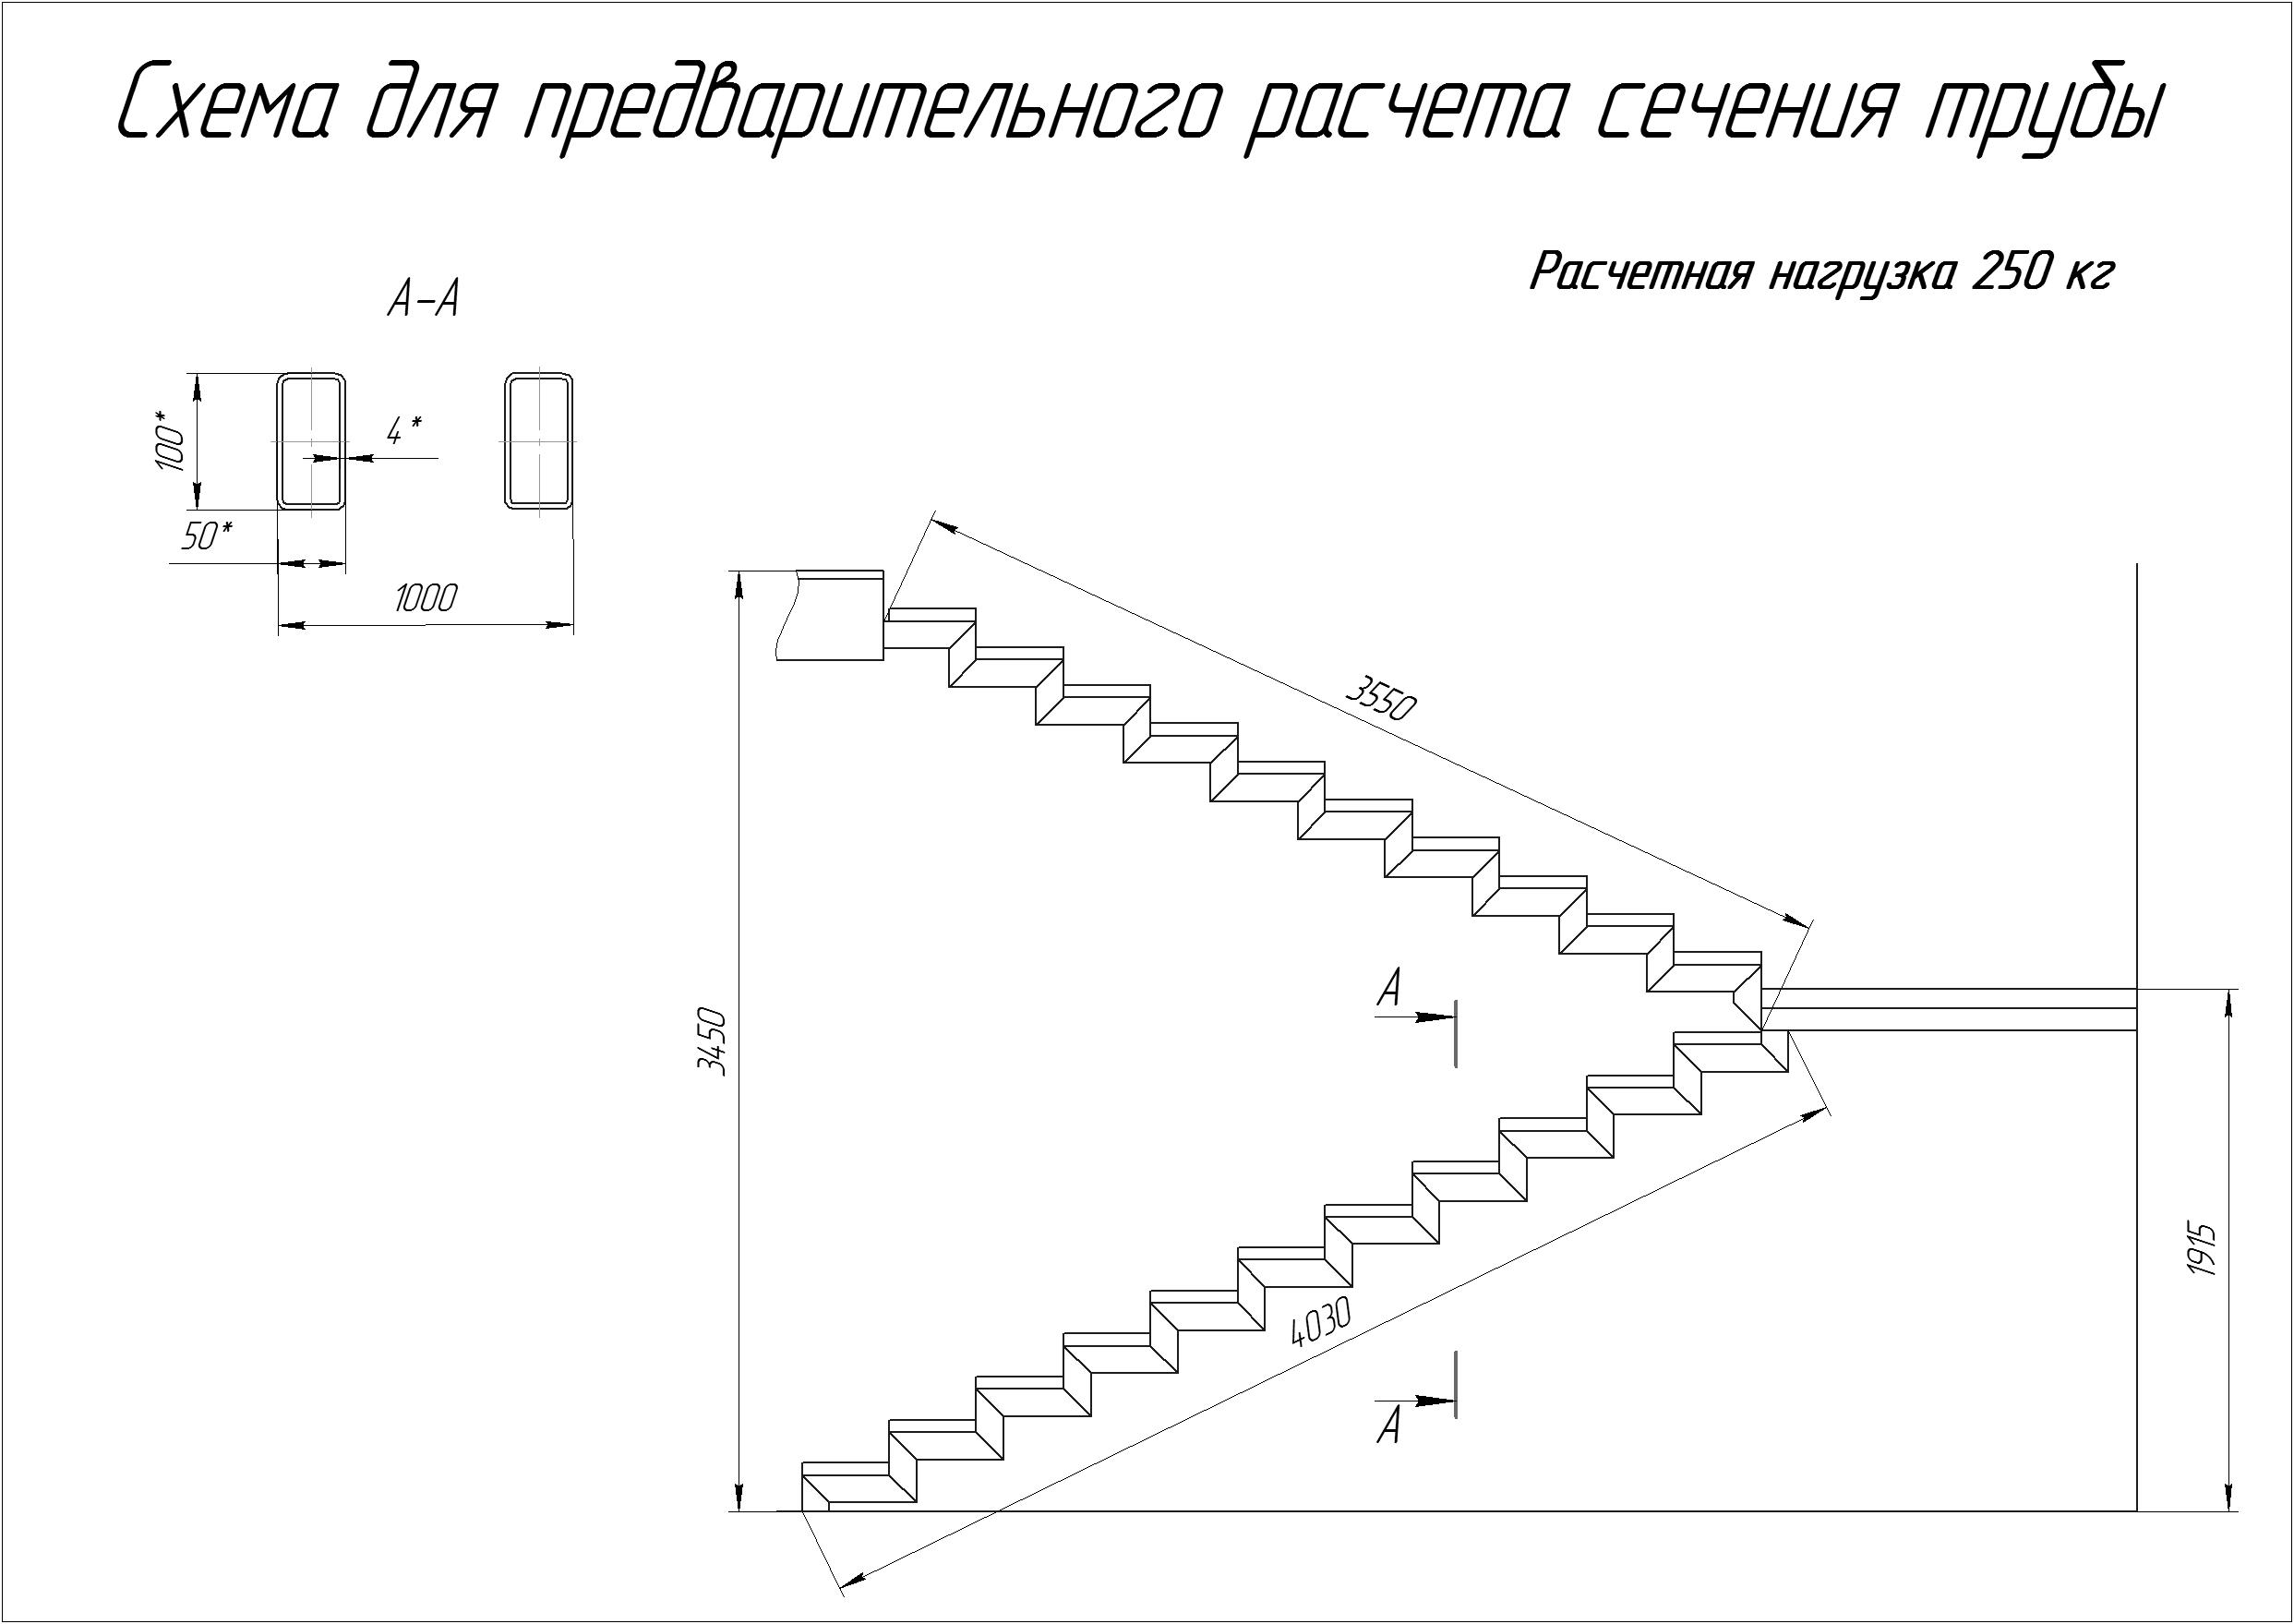 Размеры модулей модульной лестницы